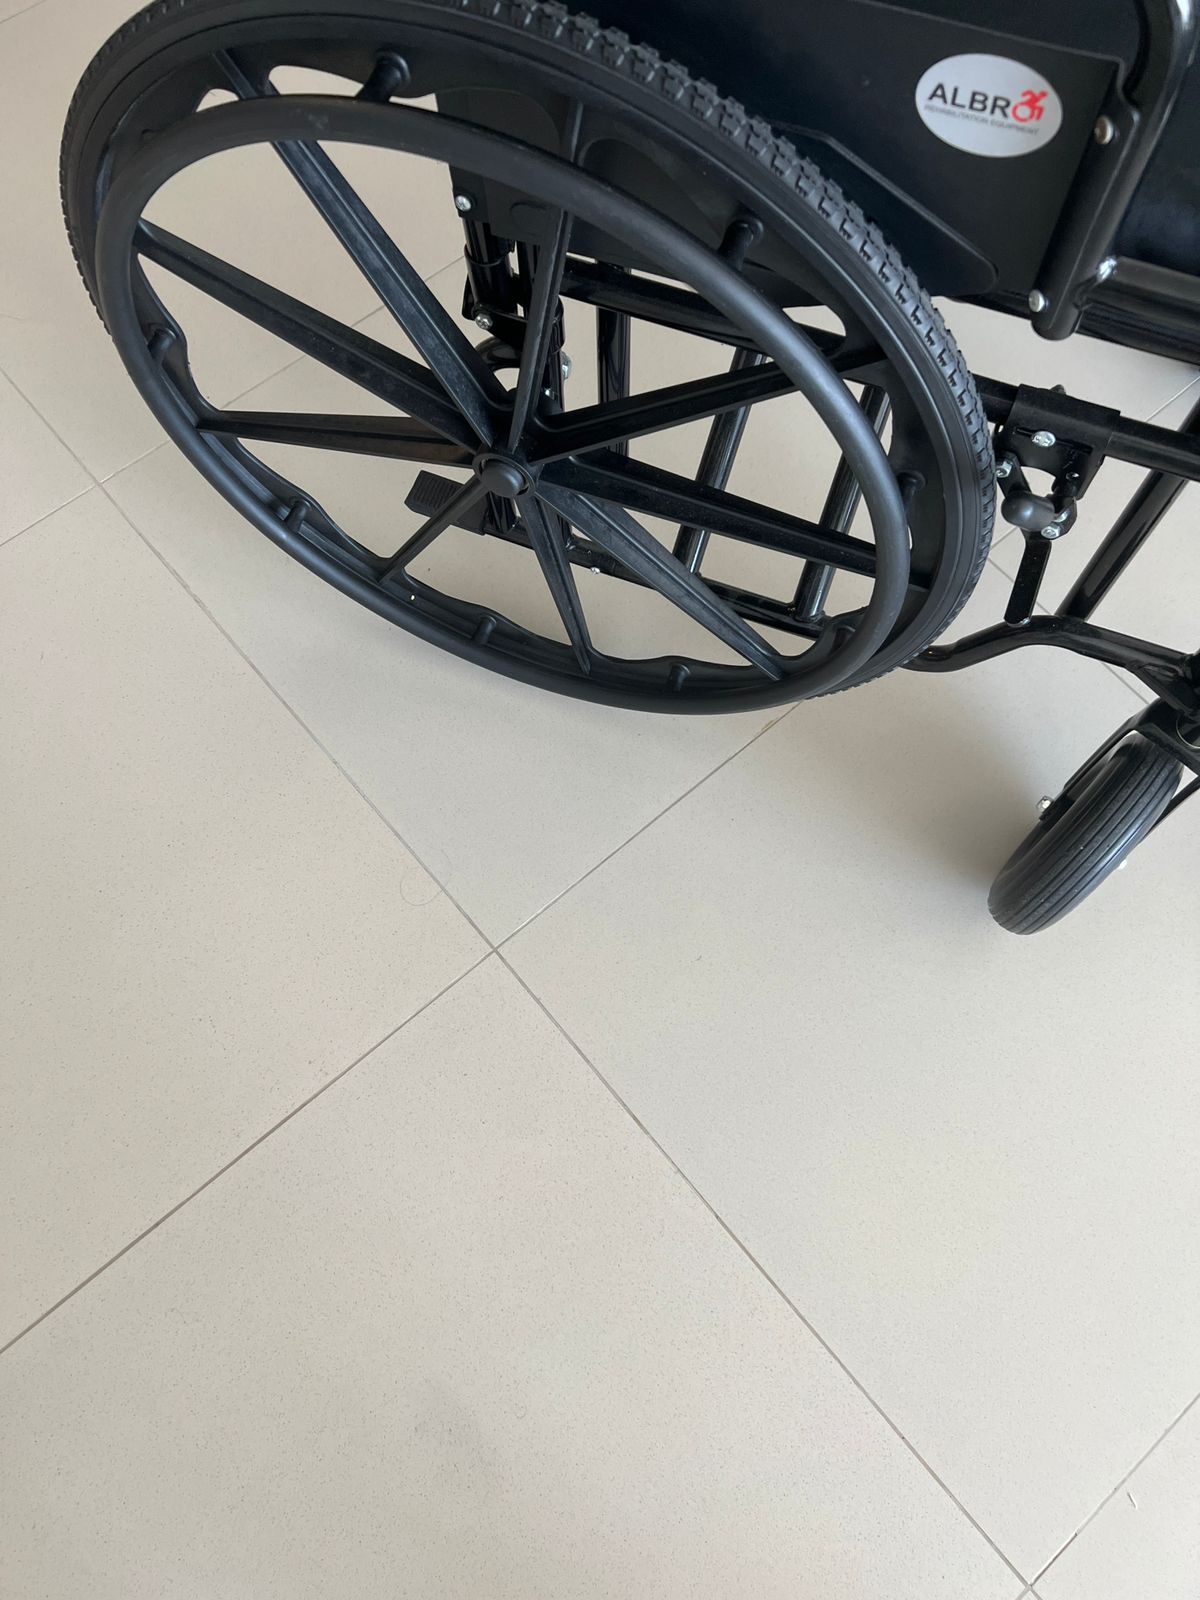 Wheelchair Wild Seat 26 Inch